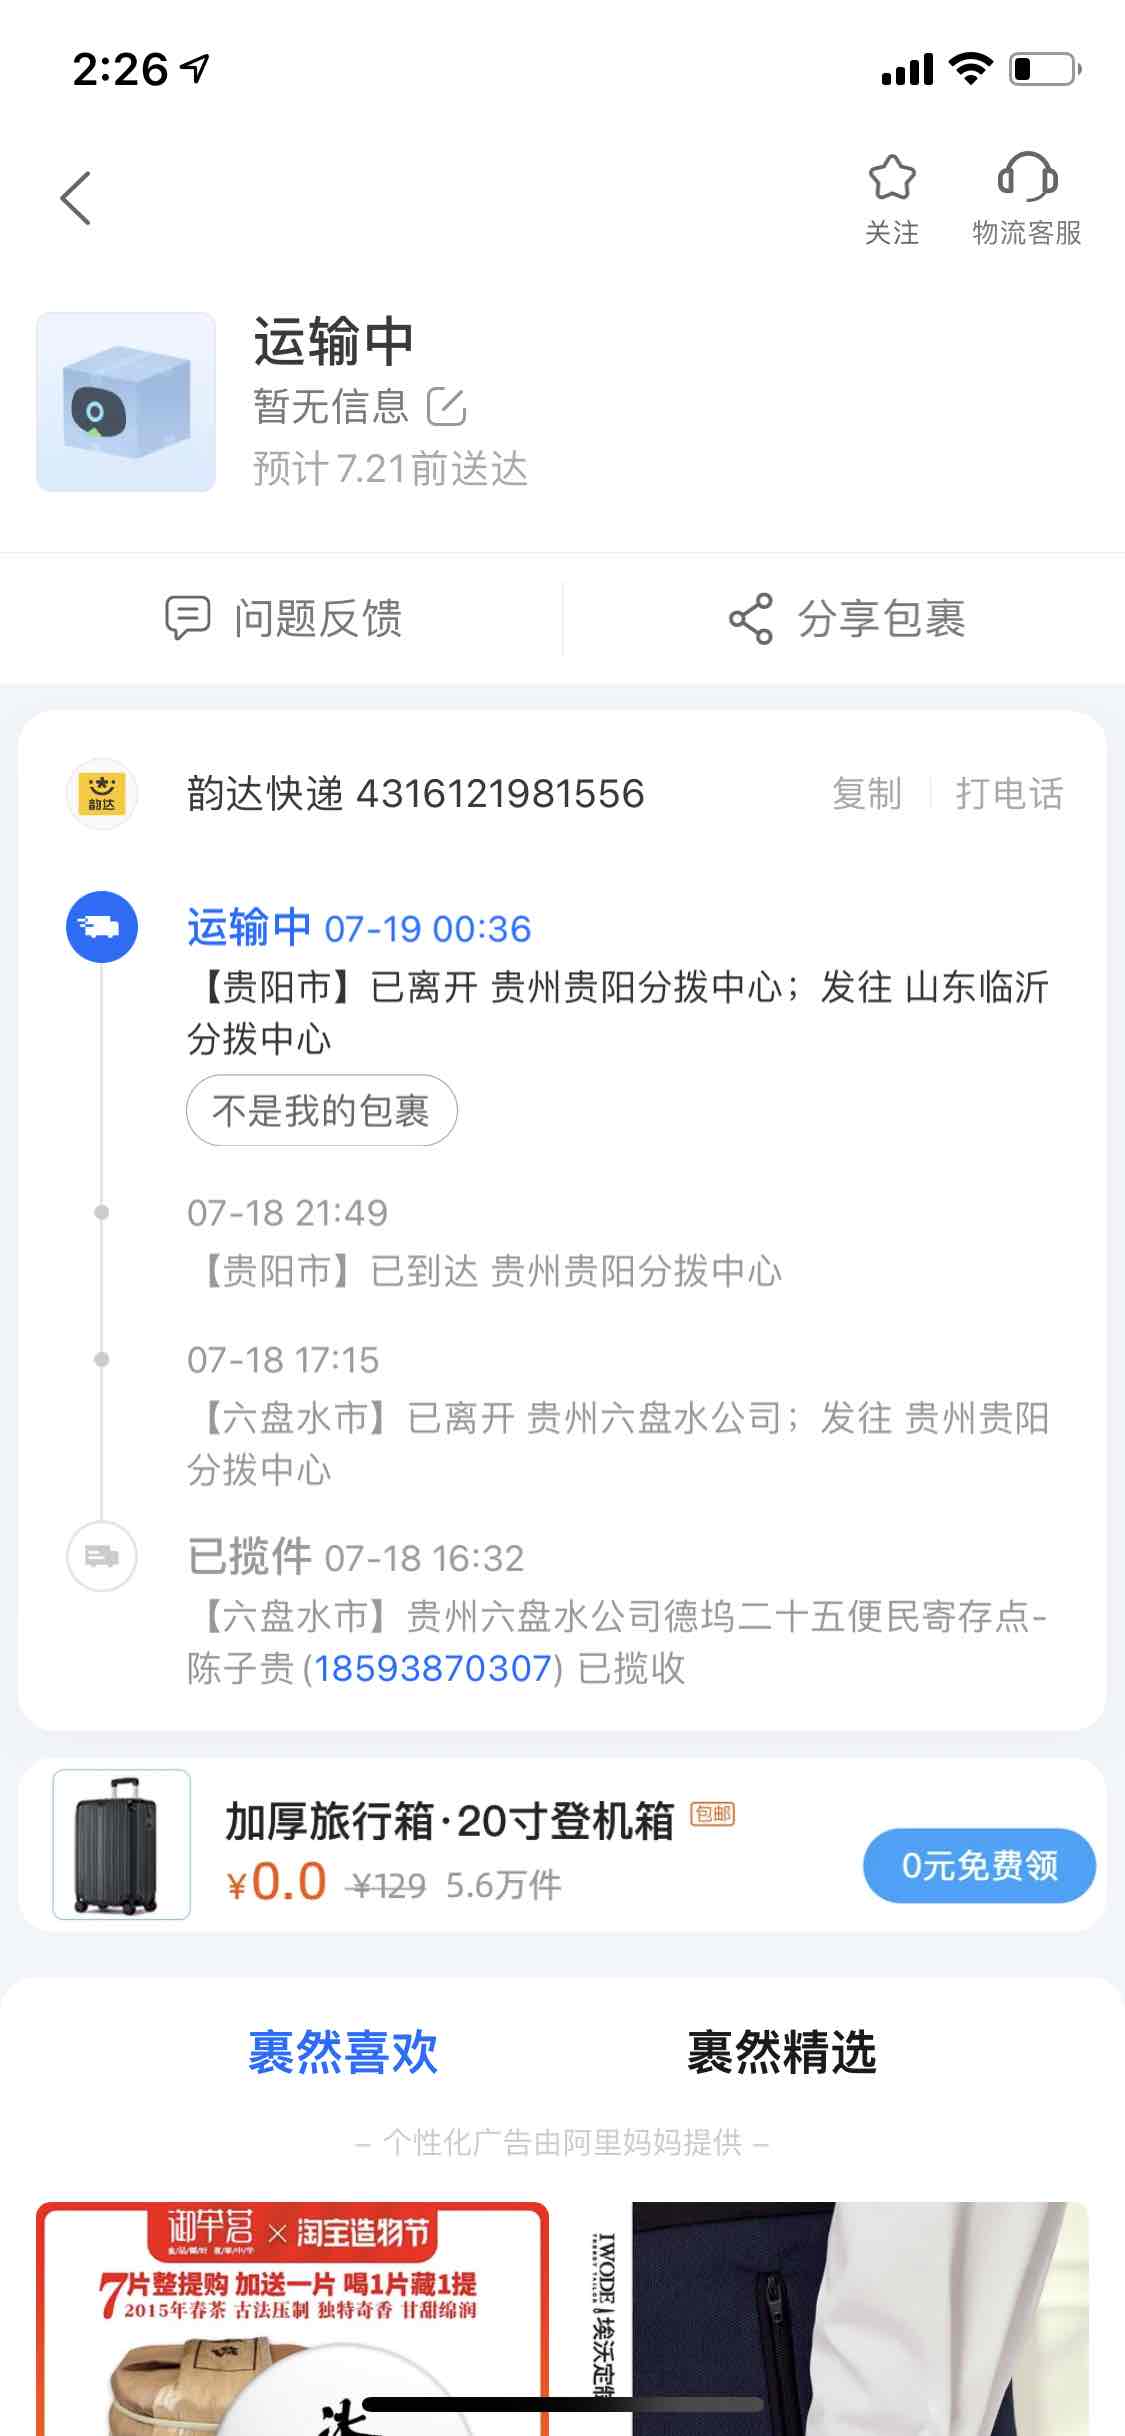 18886867899的贵州手机号   已经发货 发到详细山东了--惠小助(52huixz.com)